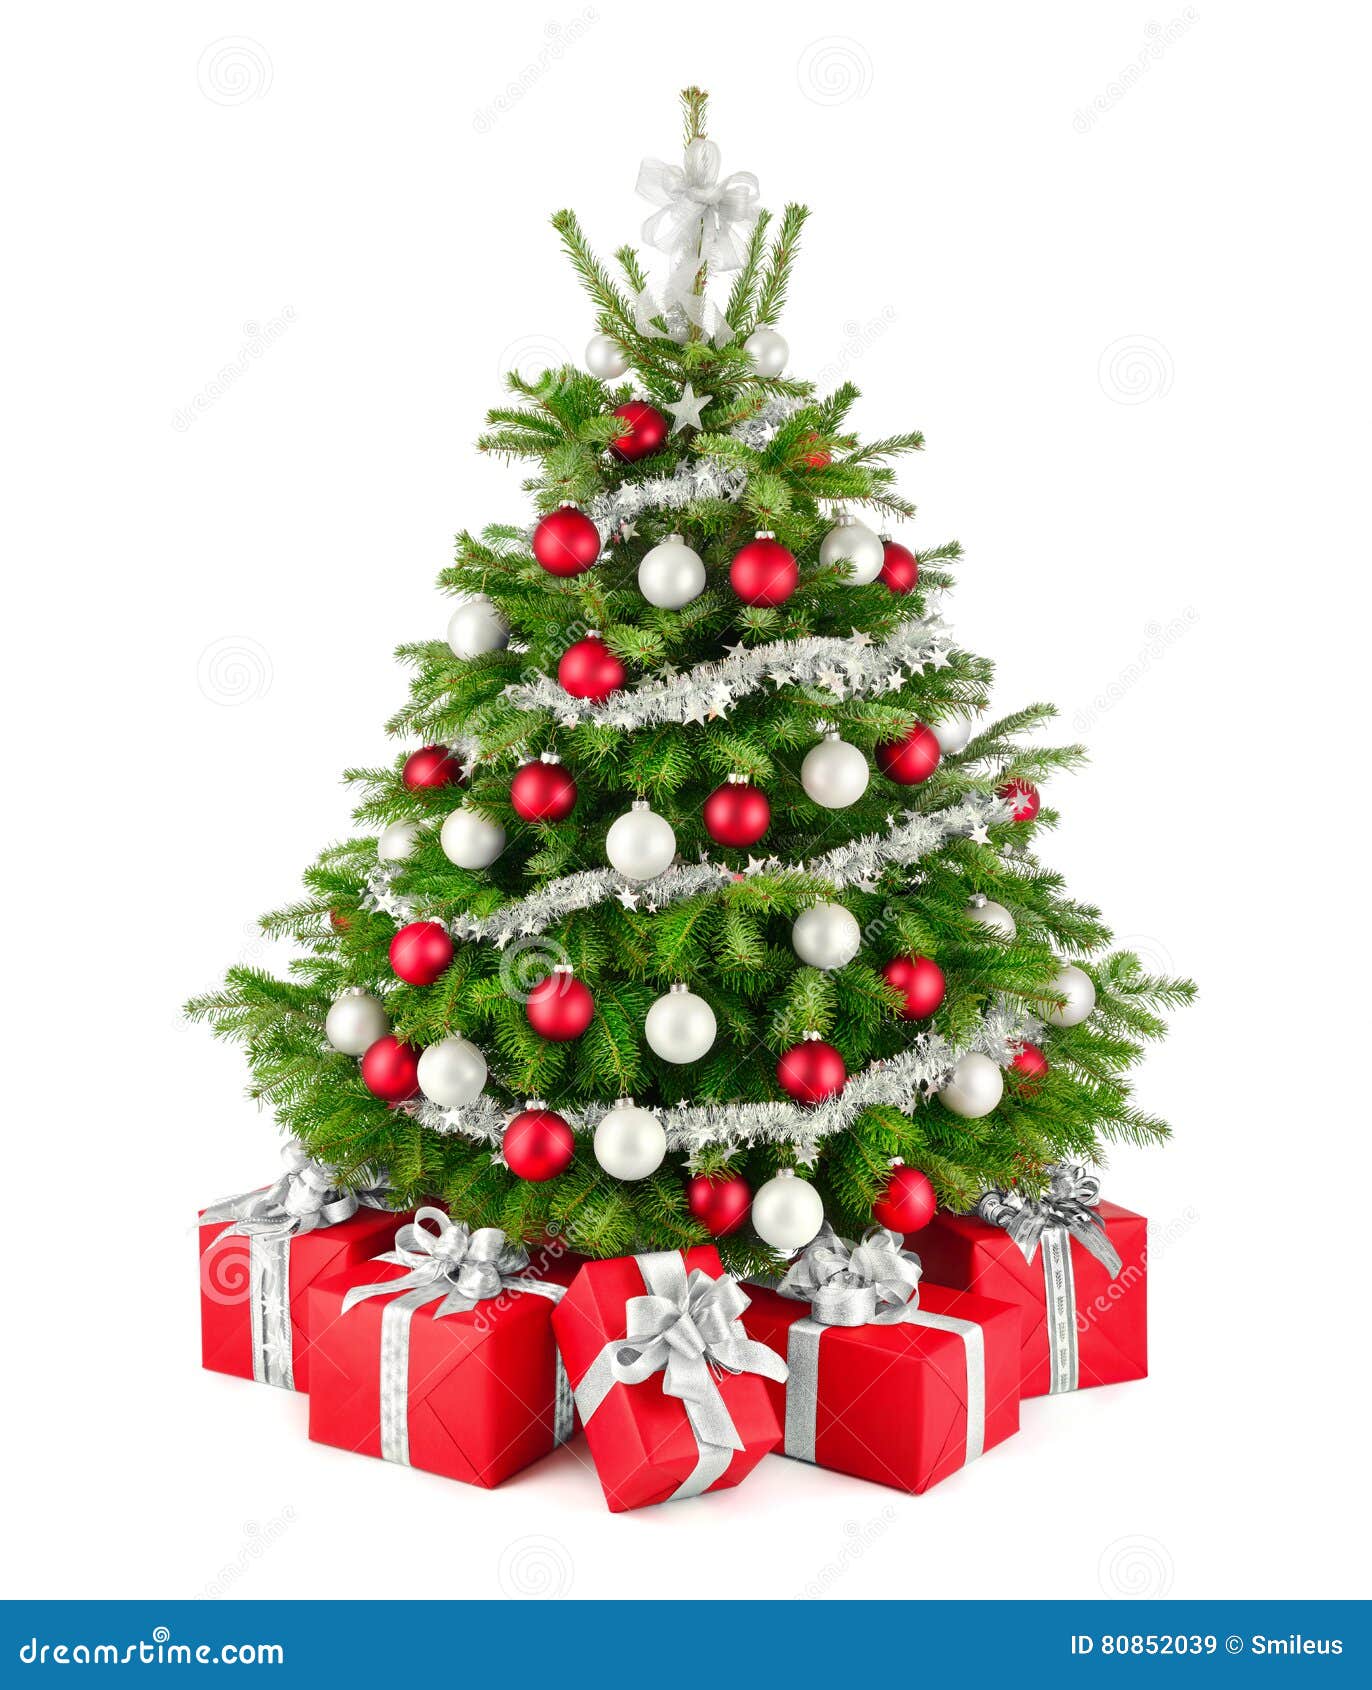 Árvore E Presentes De Natal, No Vermelho, No Branco E Na Prata Imagem de  Stock - Imagem de brilho, elegante: 80852039